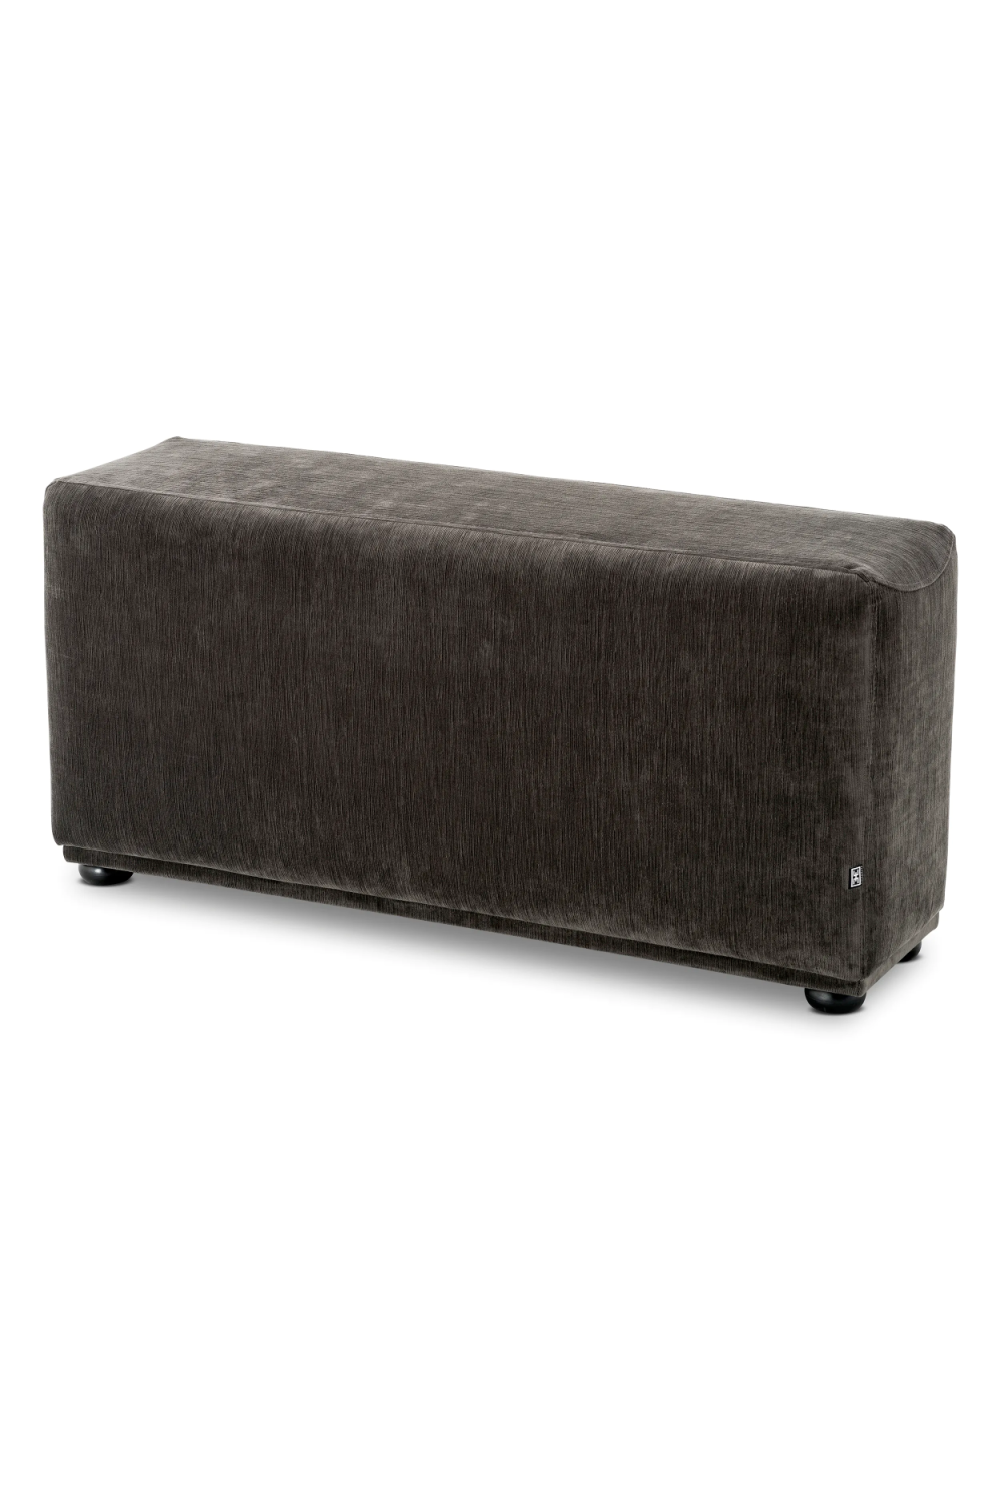 Gray Modular Lounge Sofa | Eichholtz Mondial | Oroa.com